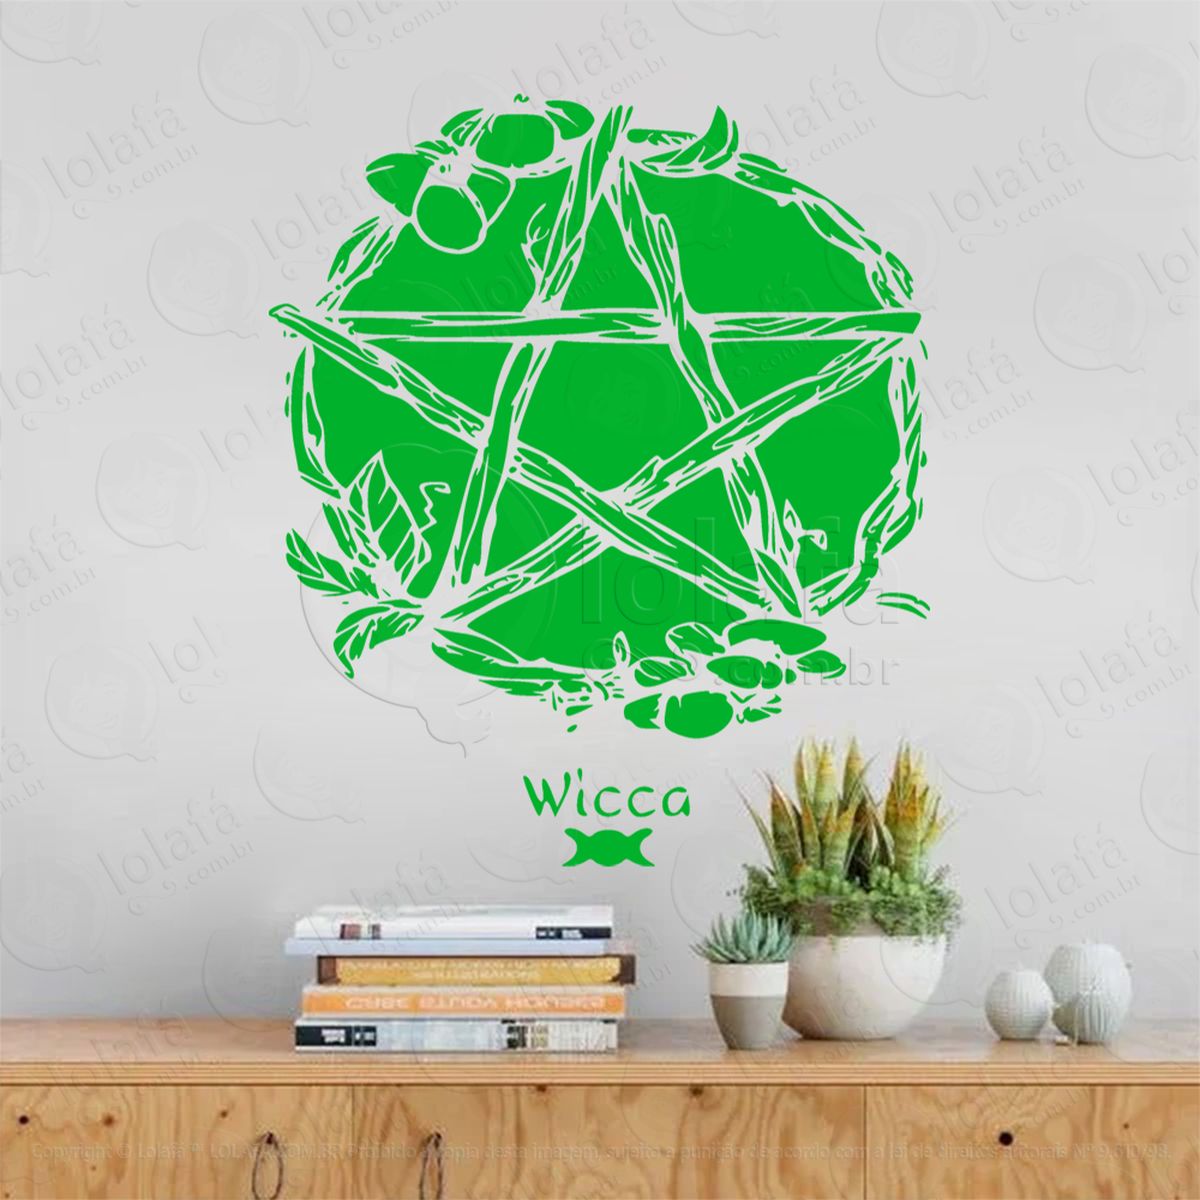 pentagrama wicca wheel adesivo de parede decorativo para casa, sala, quarto, vidro e altar ocultista - mod:77